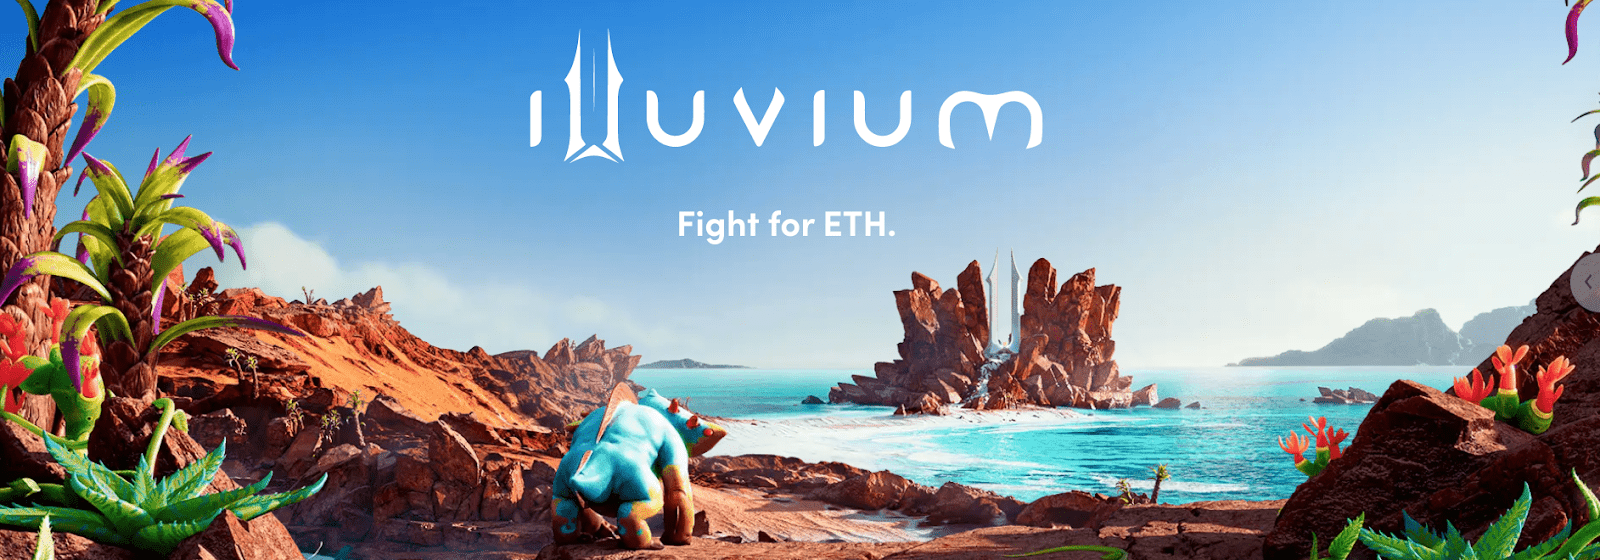 Illuvium ist das erste Tripple A Game im Play to Earn Gaming